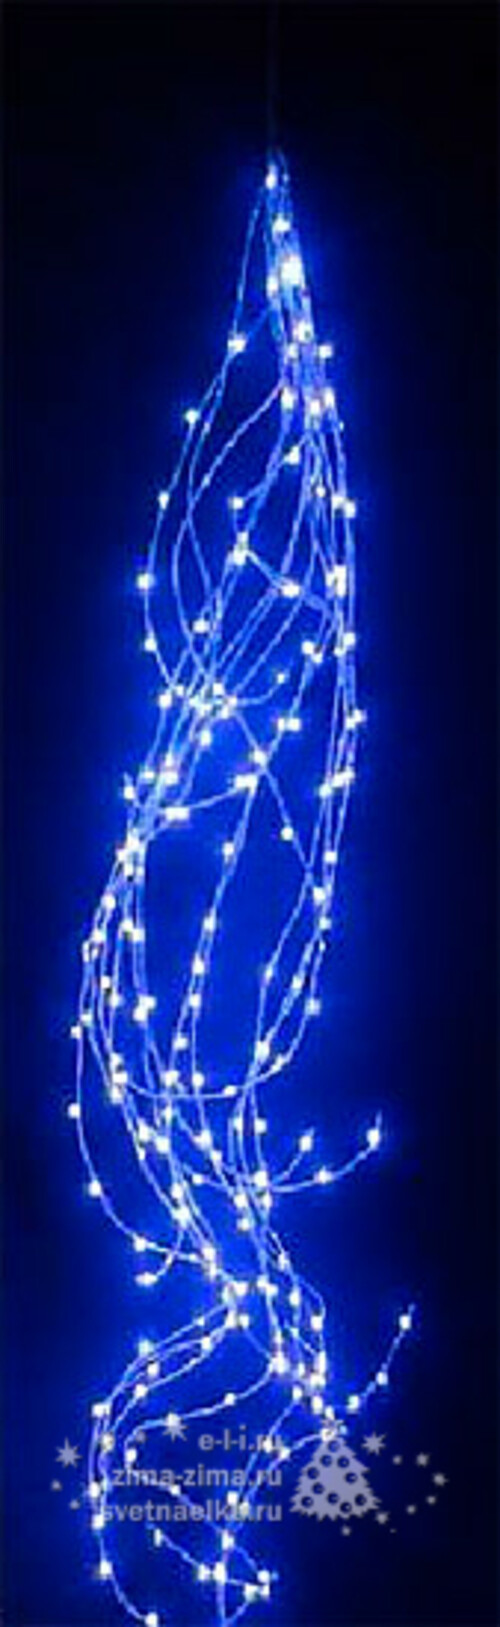 Гирлянда Конский хвост 25*2.5 м, 700 синих MINILED ламп, проволока - цветной шнур BEAUTY LED